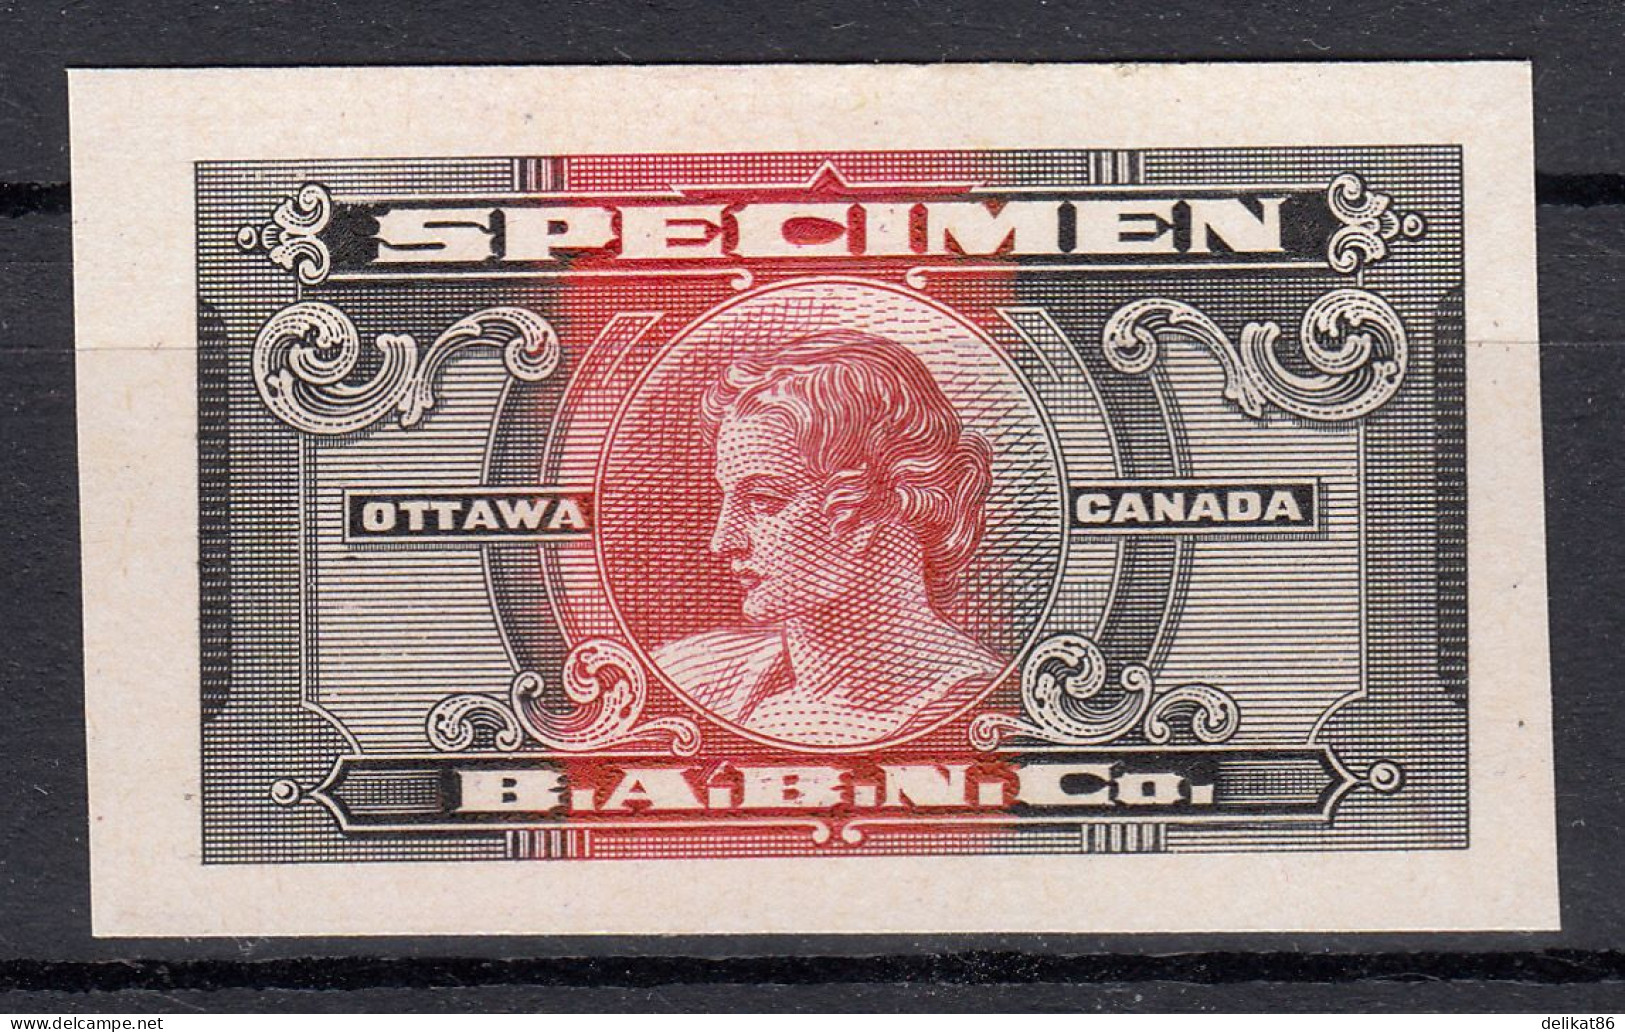 Probedruck, Test-Stamp, Specimen B.A.B.N.Co-Ottawa Kanada 1935 - Proeven & Herdruk